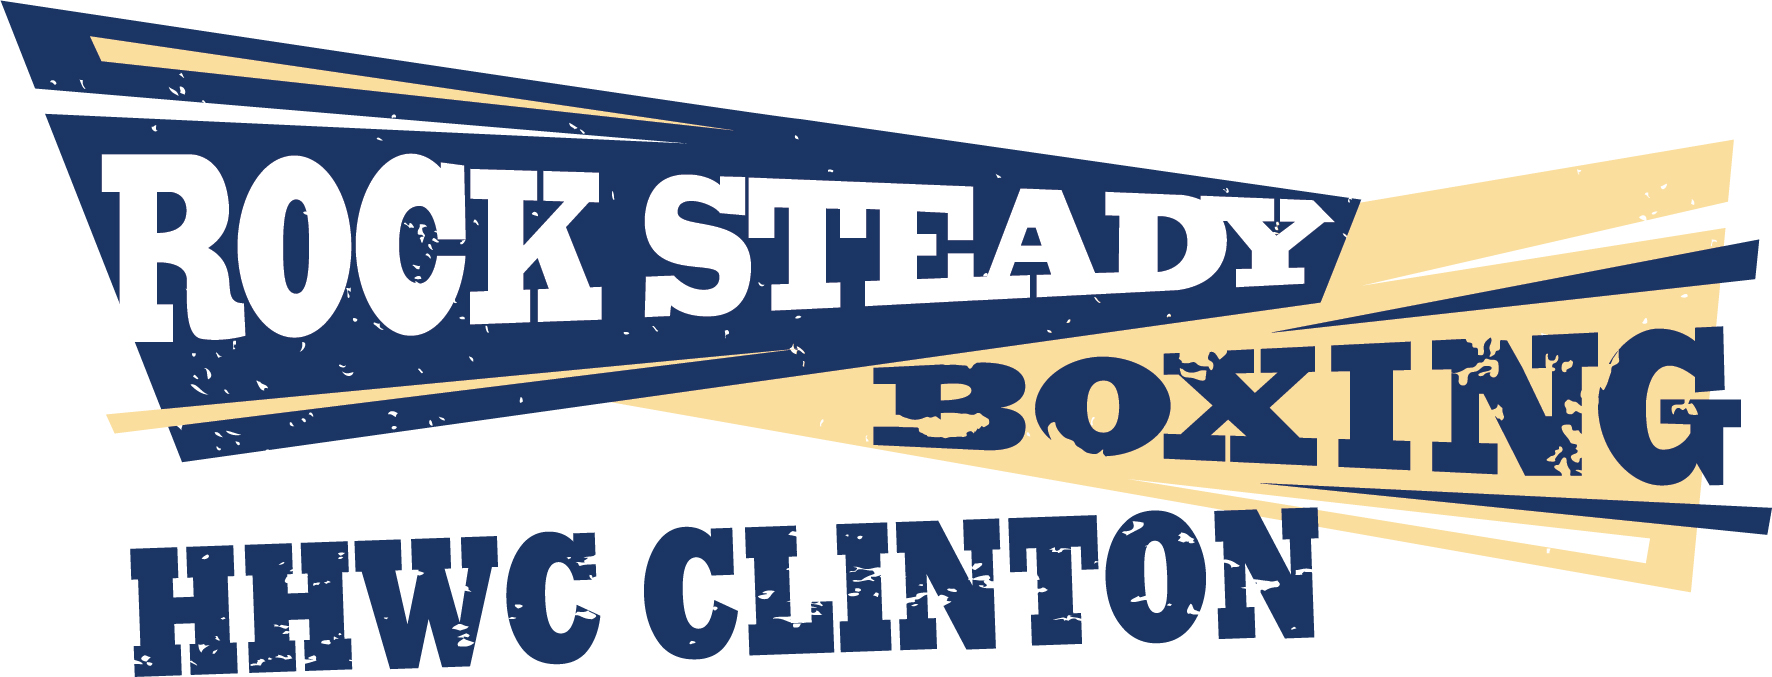 rock steady boxing logo